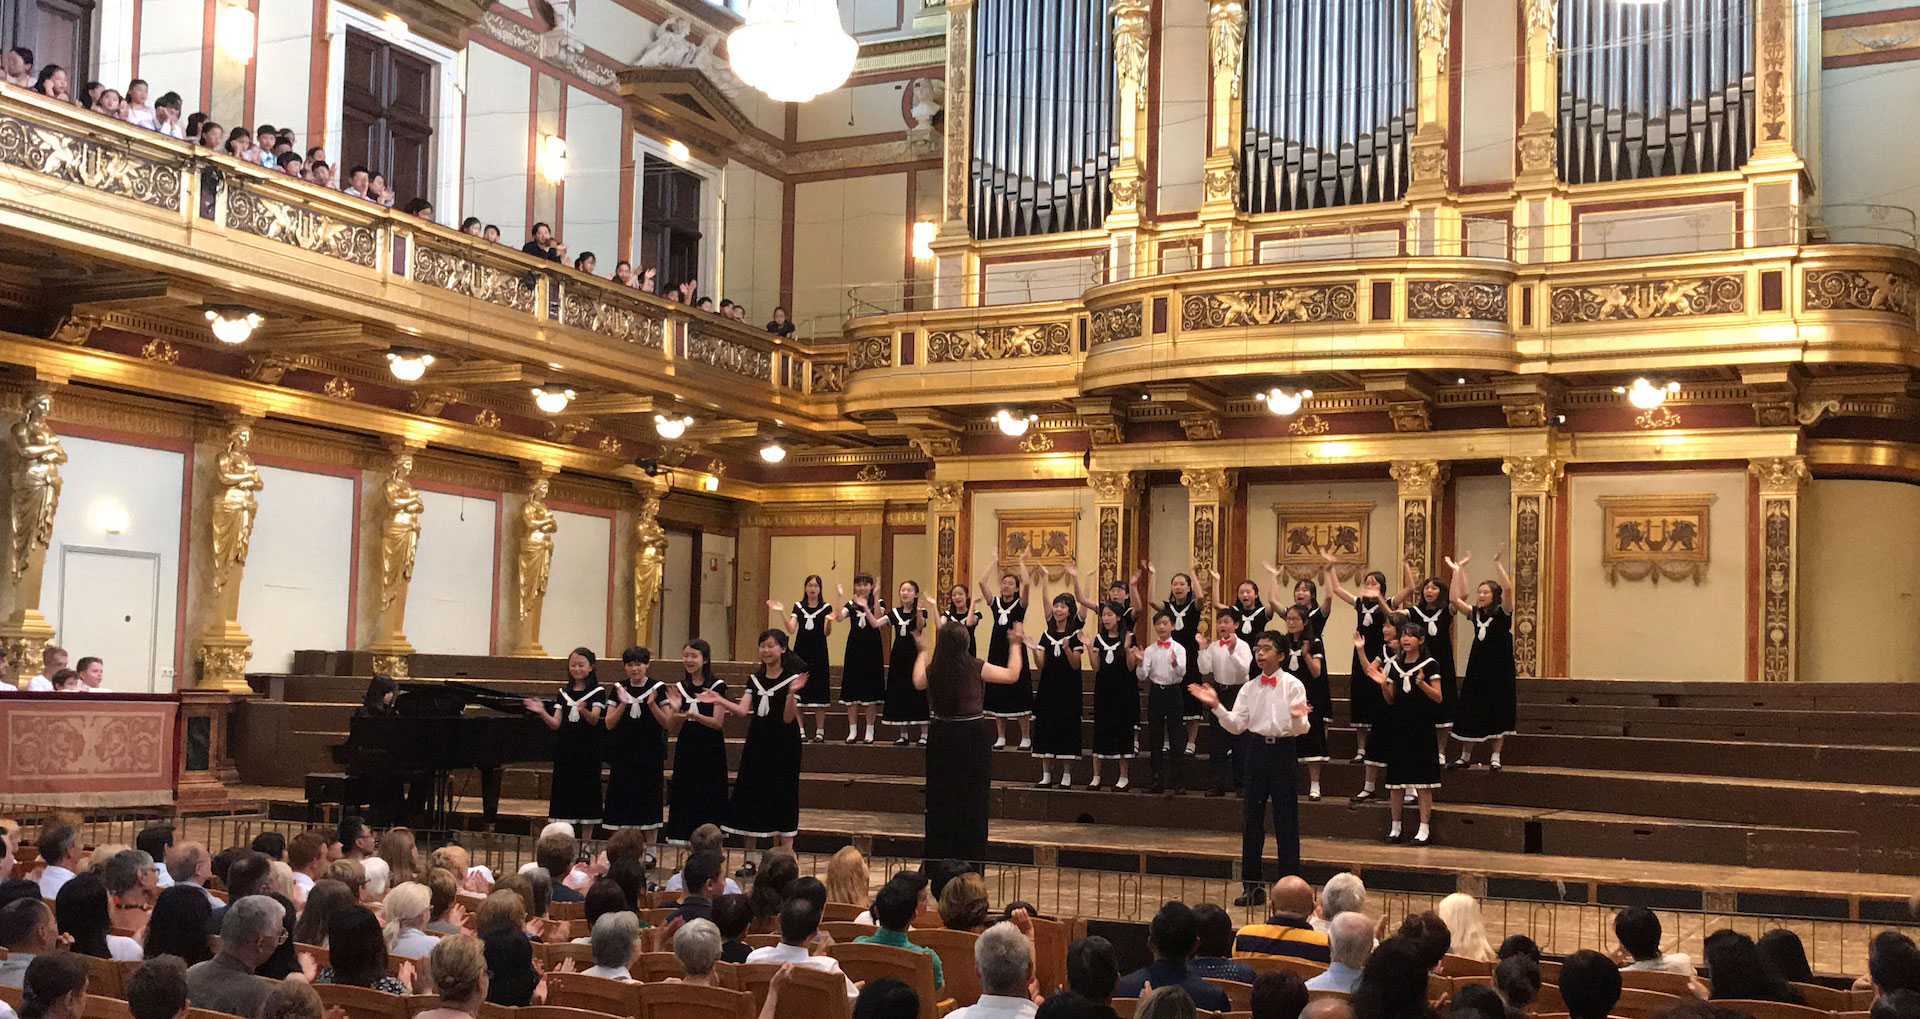 參加第九屆維也納世界和平合唱藝術節(The 9th World Peace Choral Festival)–Vienna,Austrria